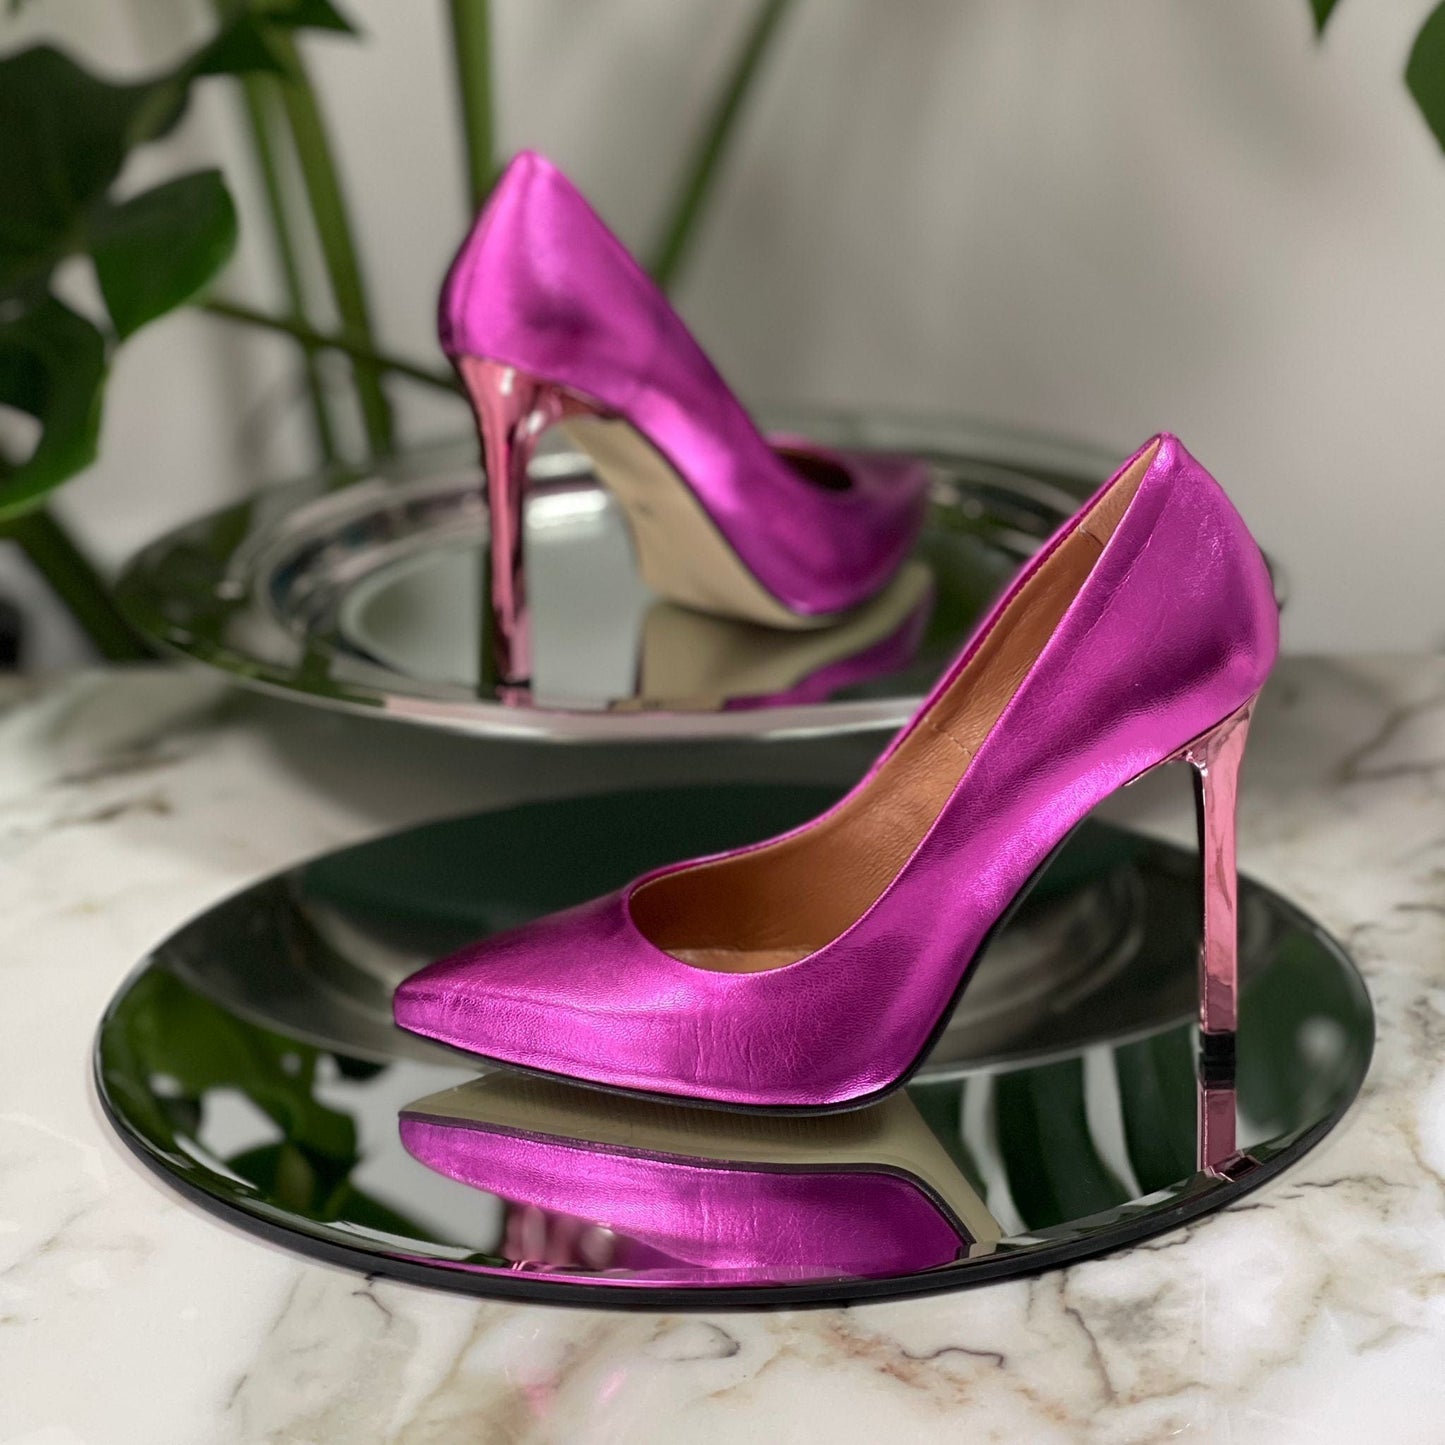 Hot pink petite court heels